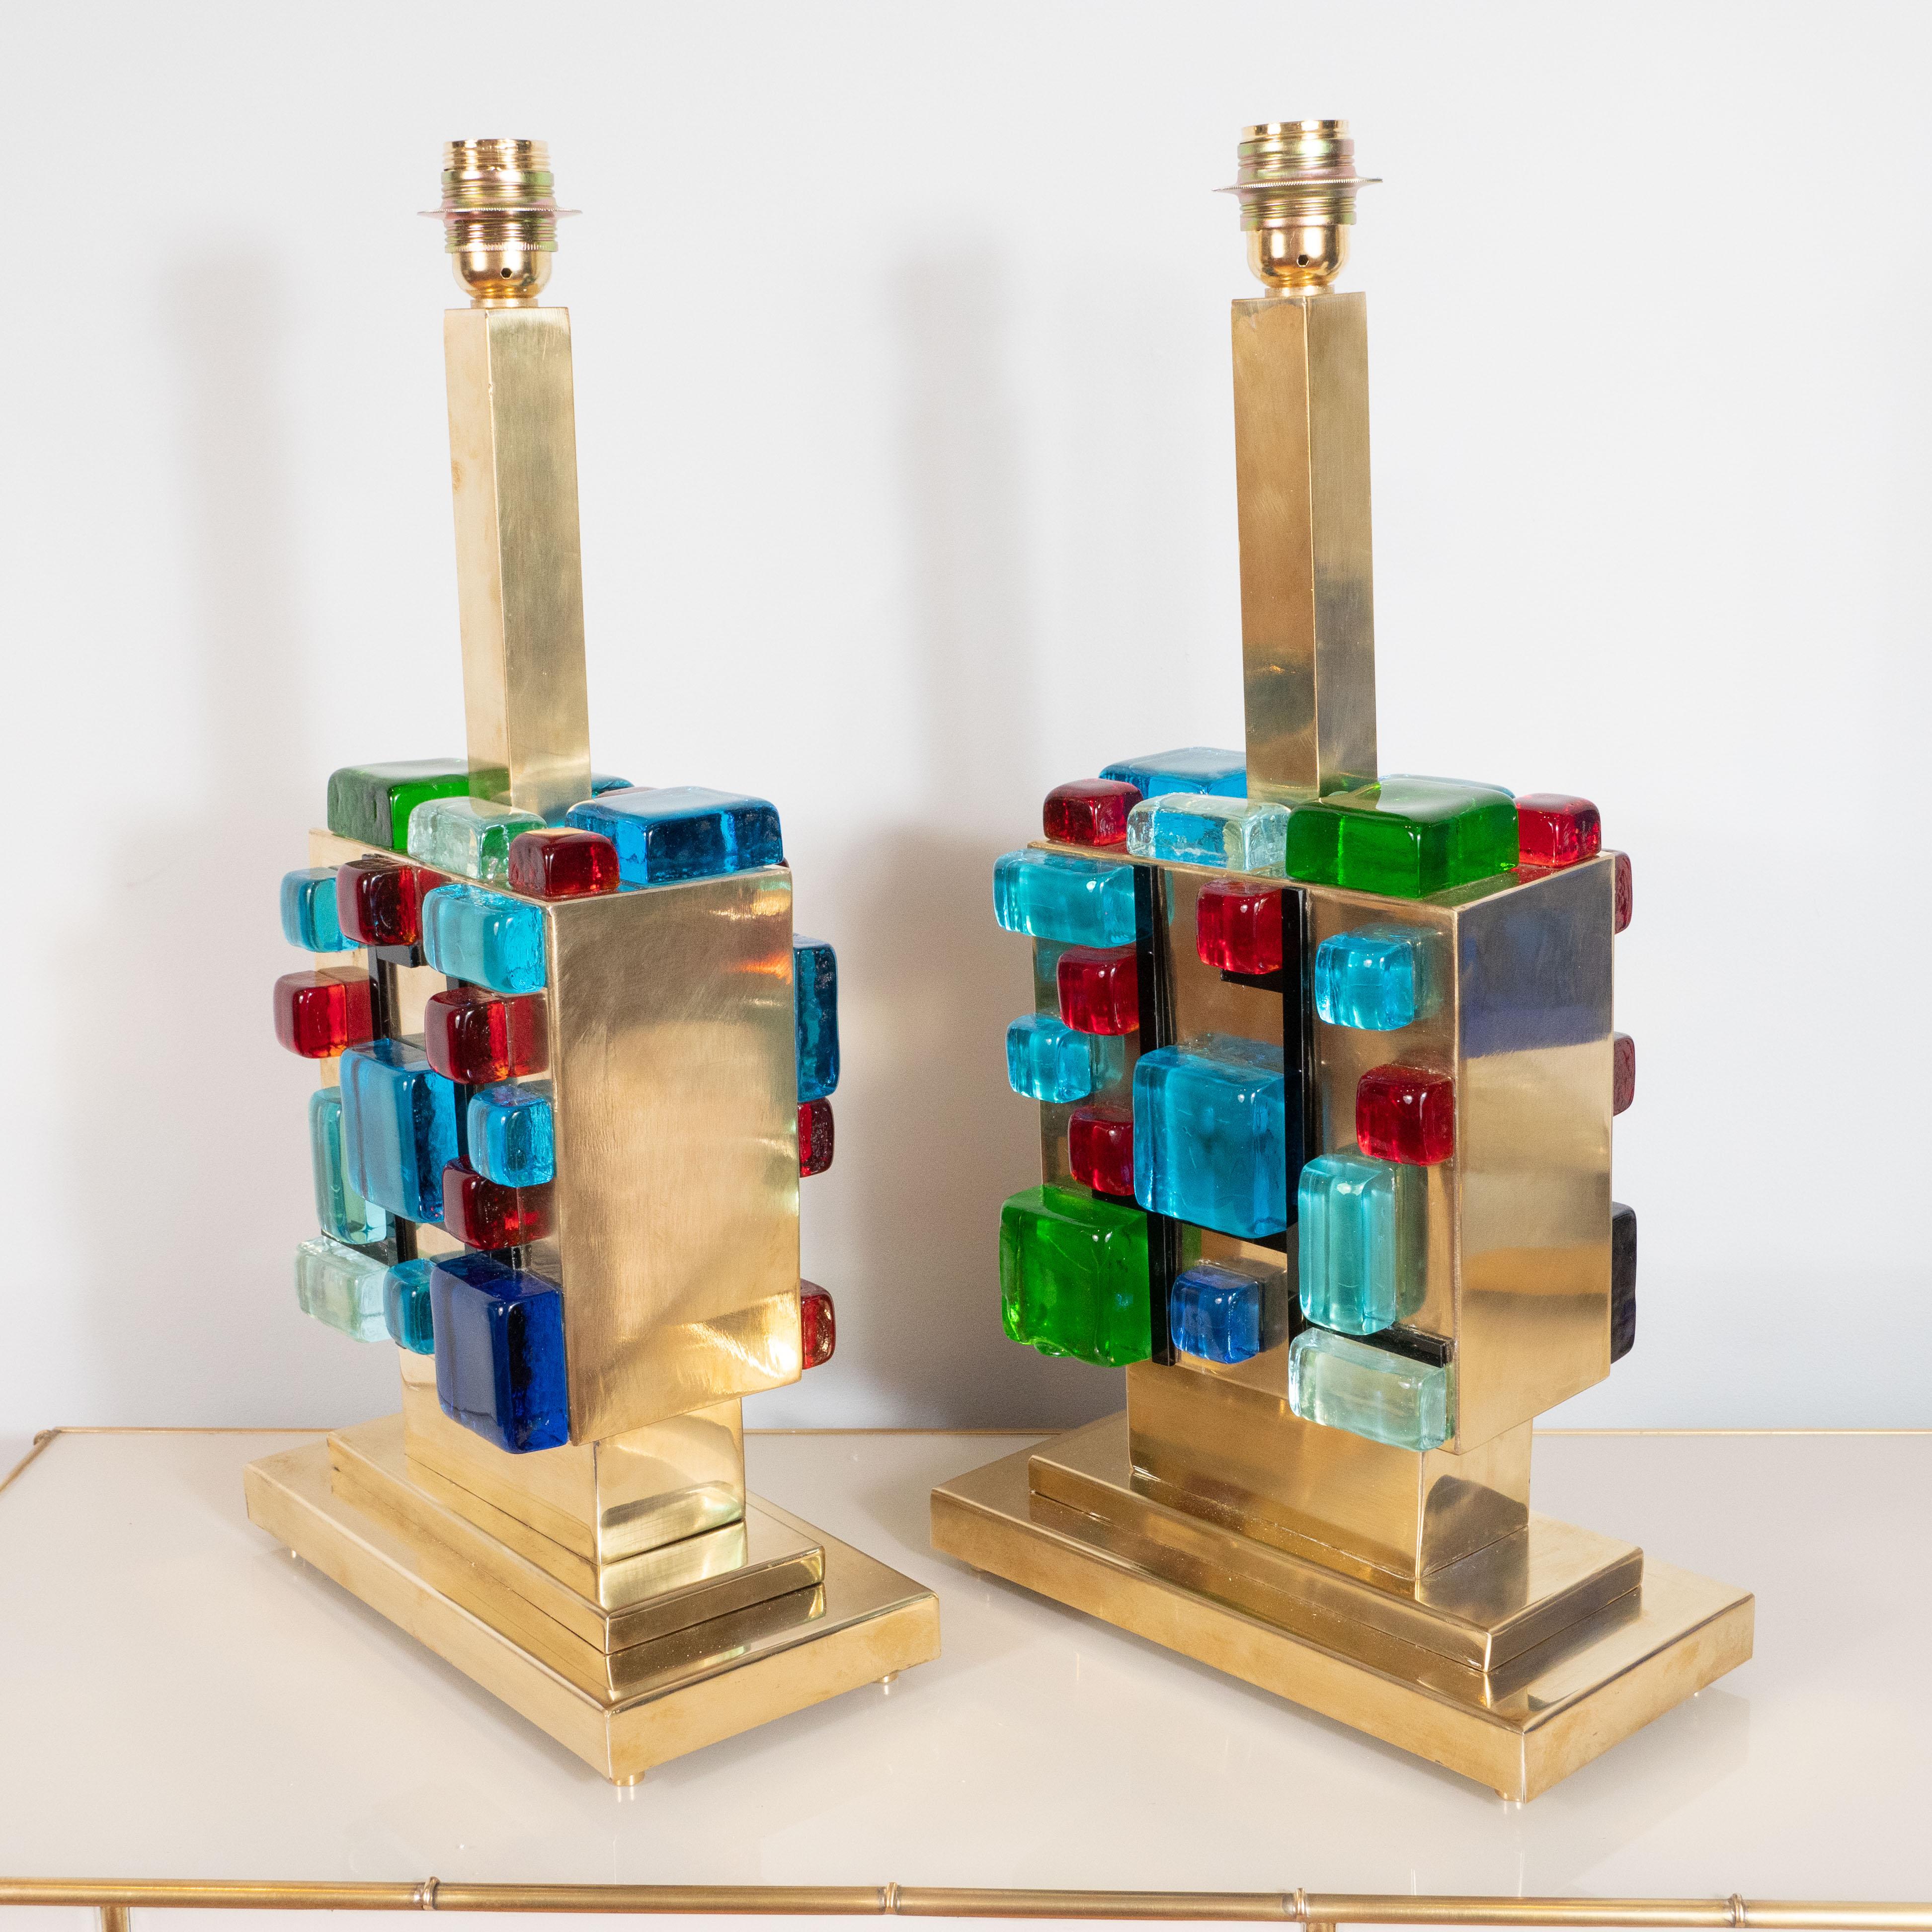 Dieses seltene und lebendige Lampenpaar besteht aus mehrfarbigen (rot, blau, türkis, grün und klar) quadratischen Murano-Glasblöcken, die in einer geometrischen Form auf einem quadratischen Sockel aus poliertem Messing angeordnet sind, so dass das